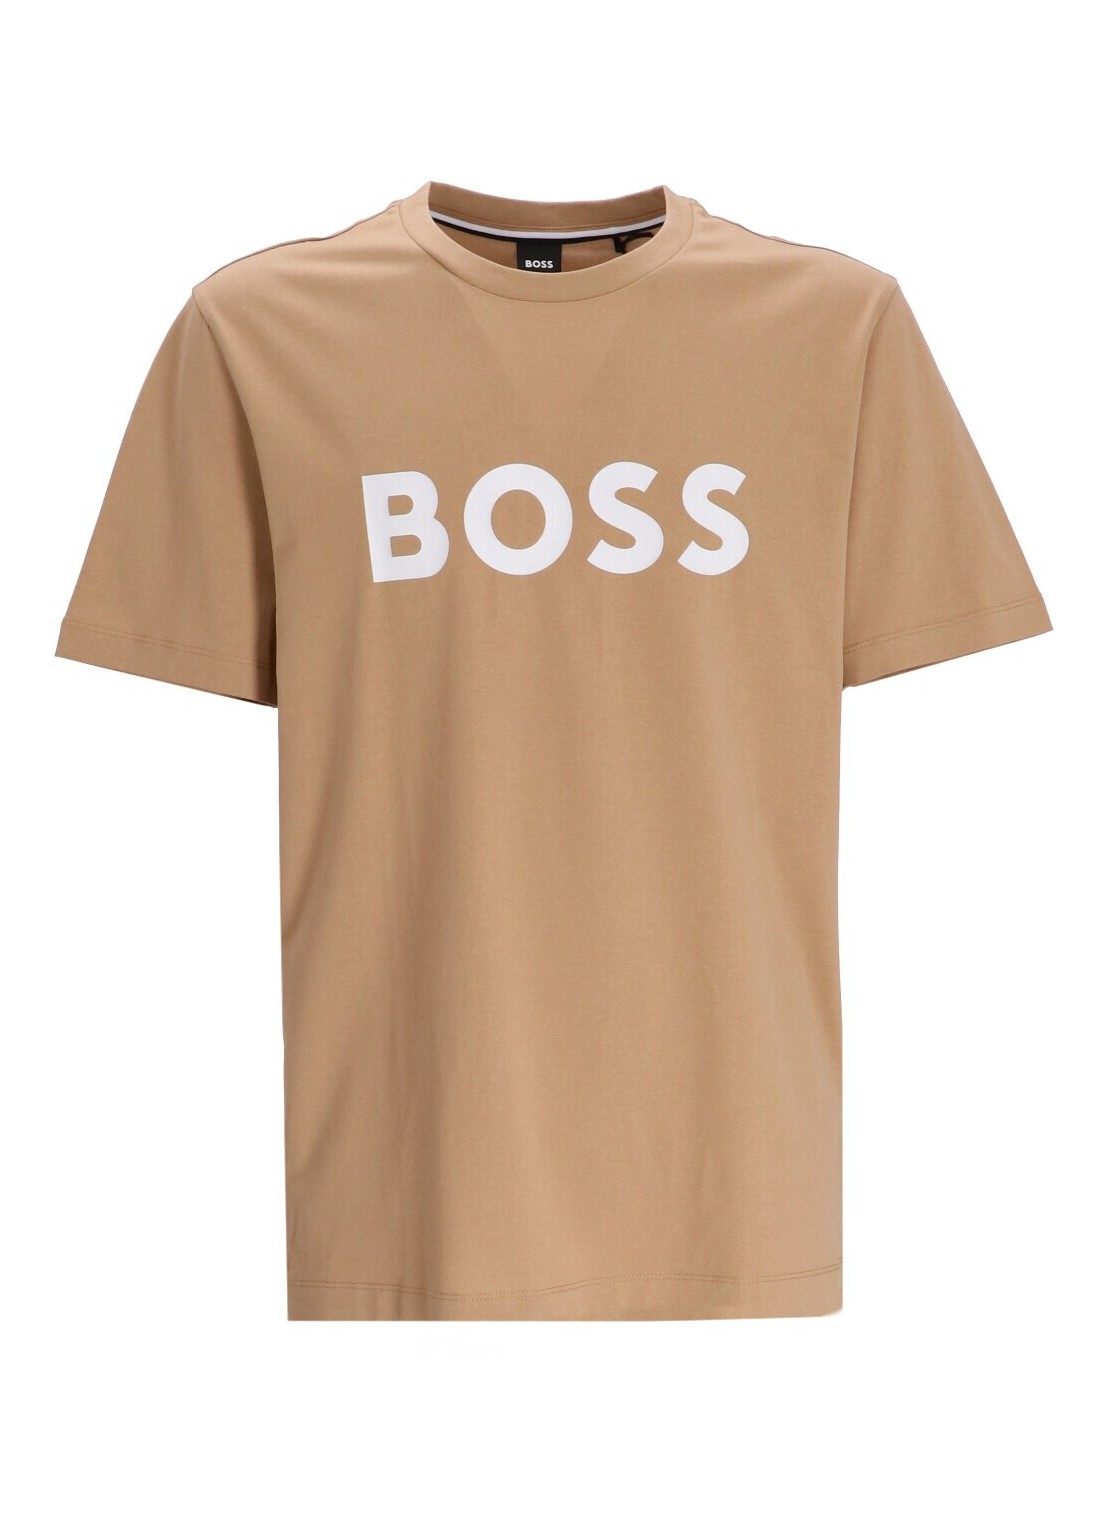 Camiseta boss t-shirt man tiburt 354 50495742 260 talla S
 